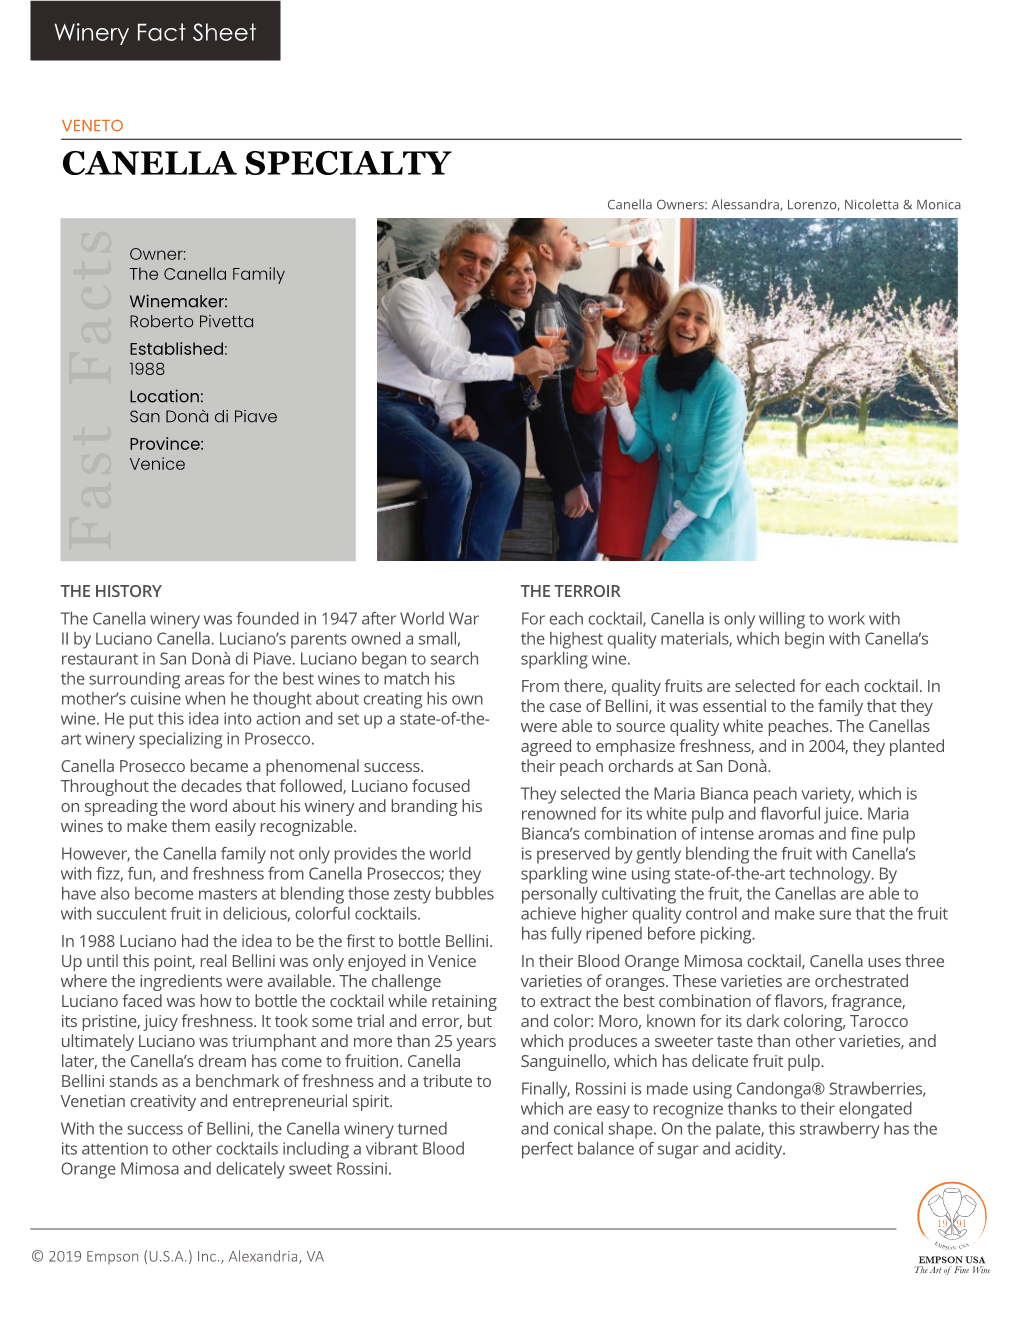 Canella Specialty